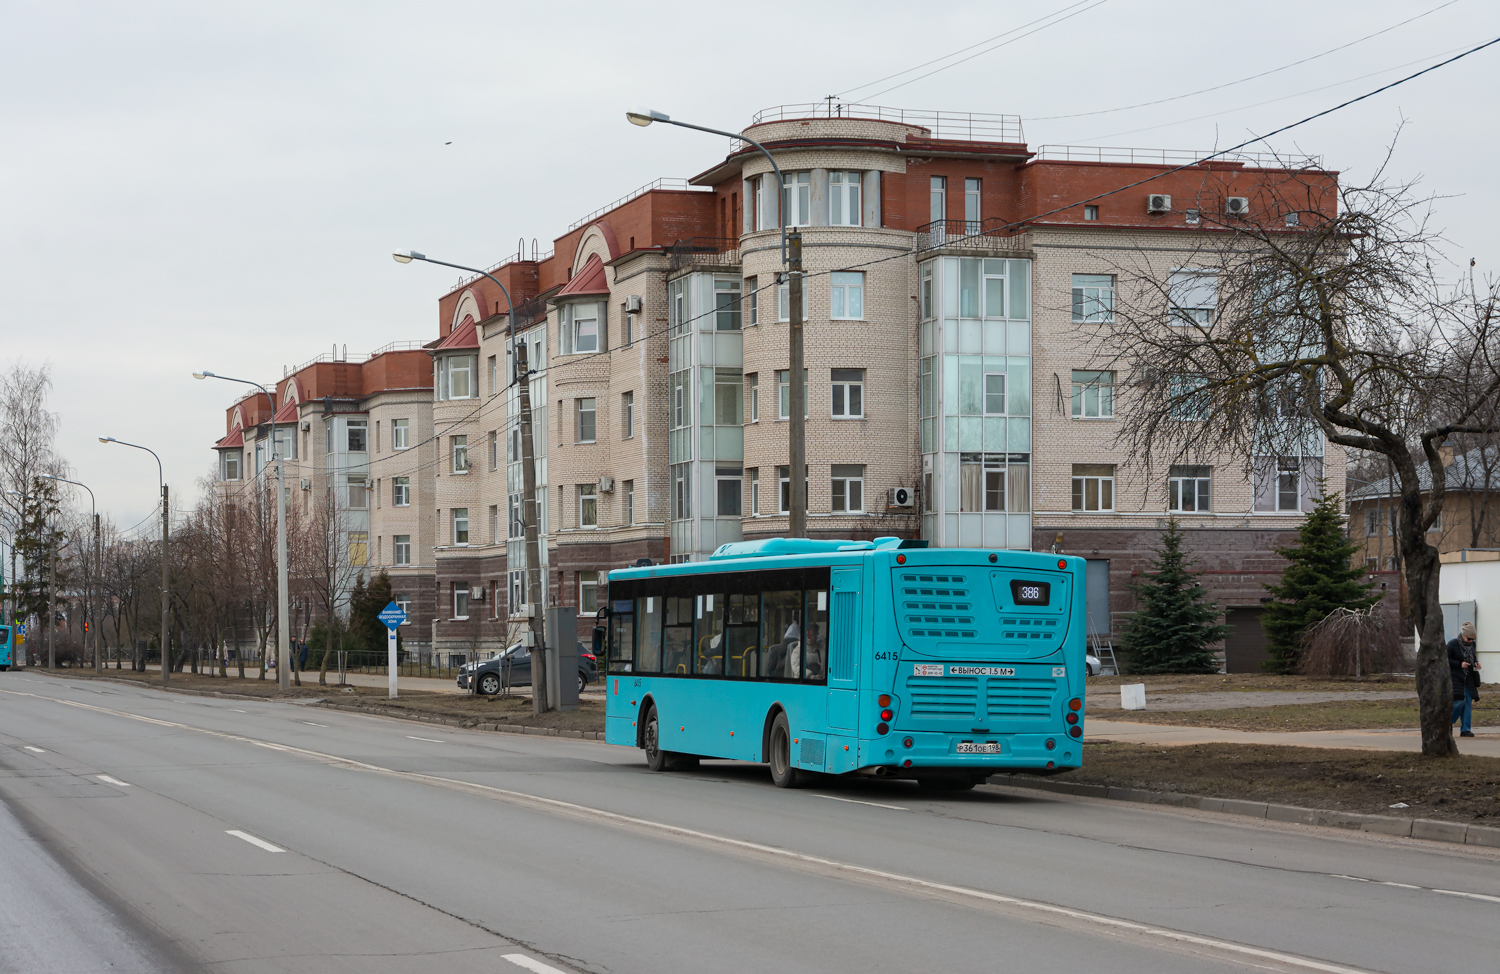 Saint-Pétersbourg, Volgabus-5270.G4 (LNG) # 6415